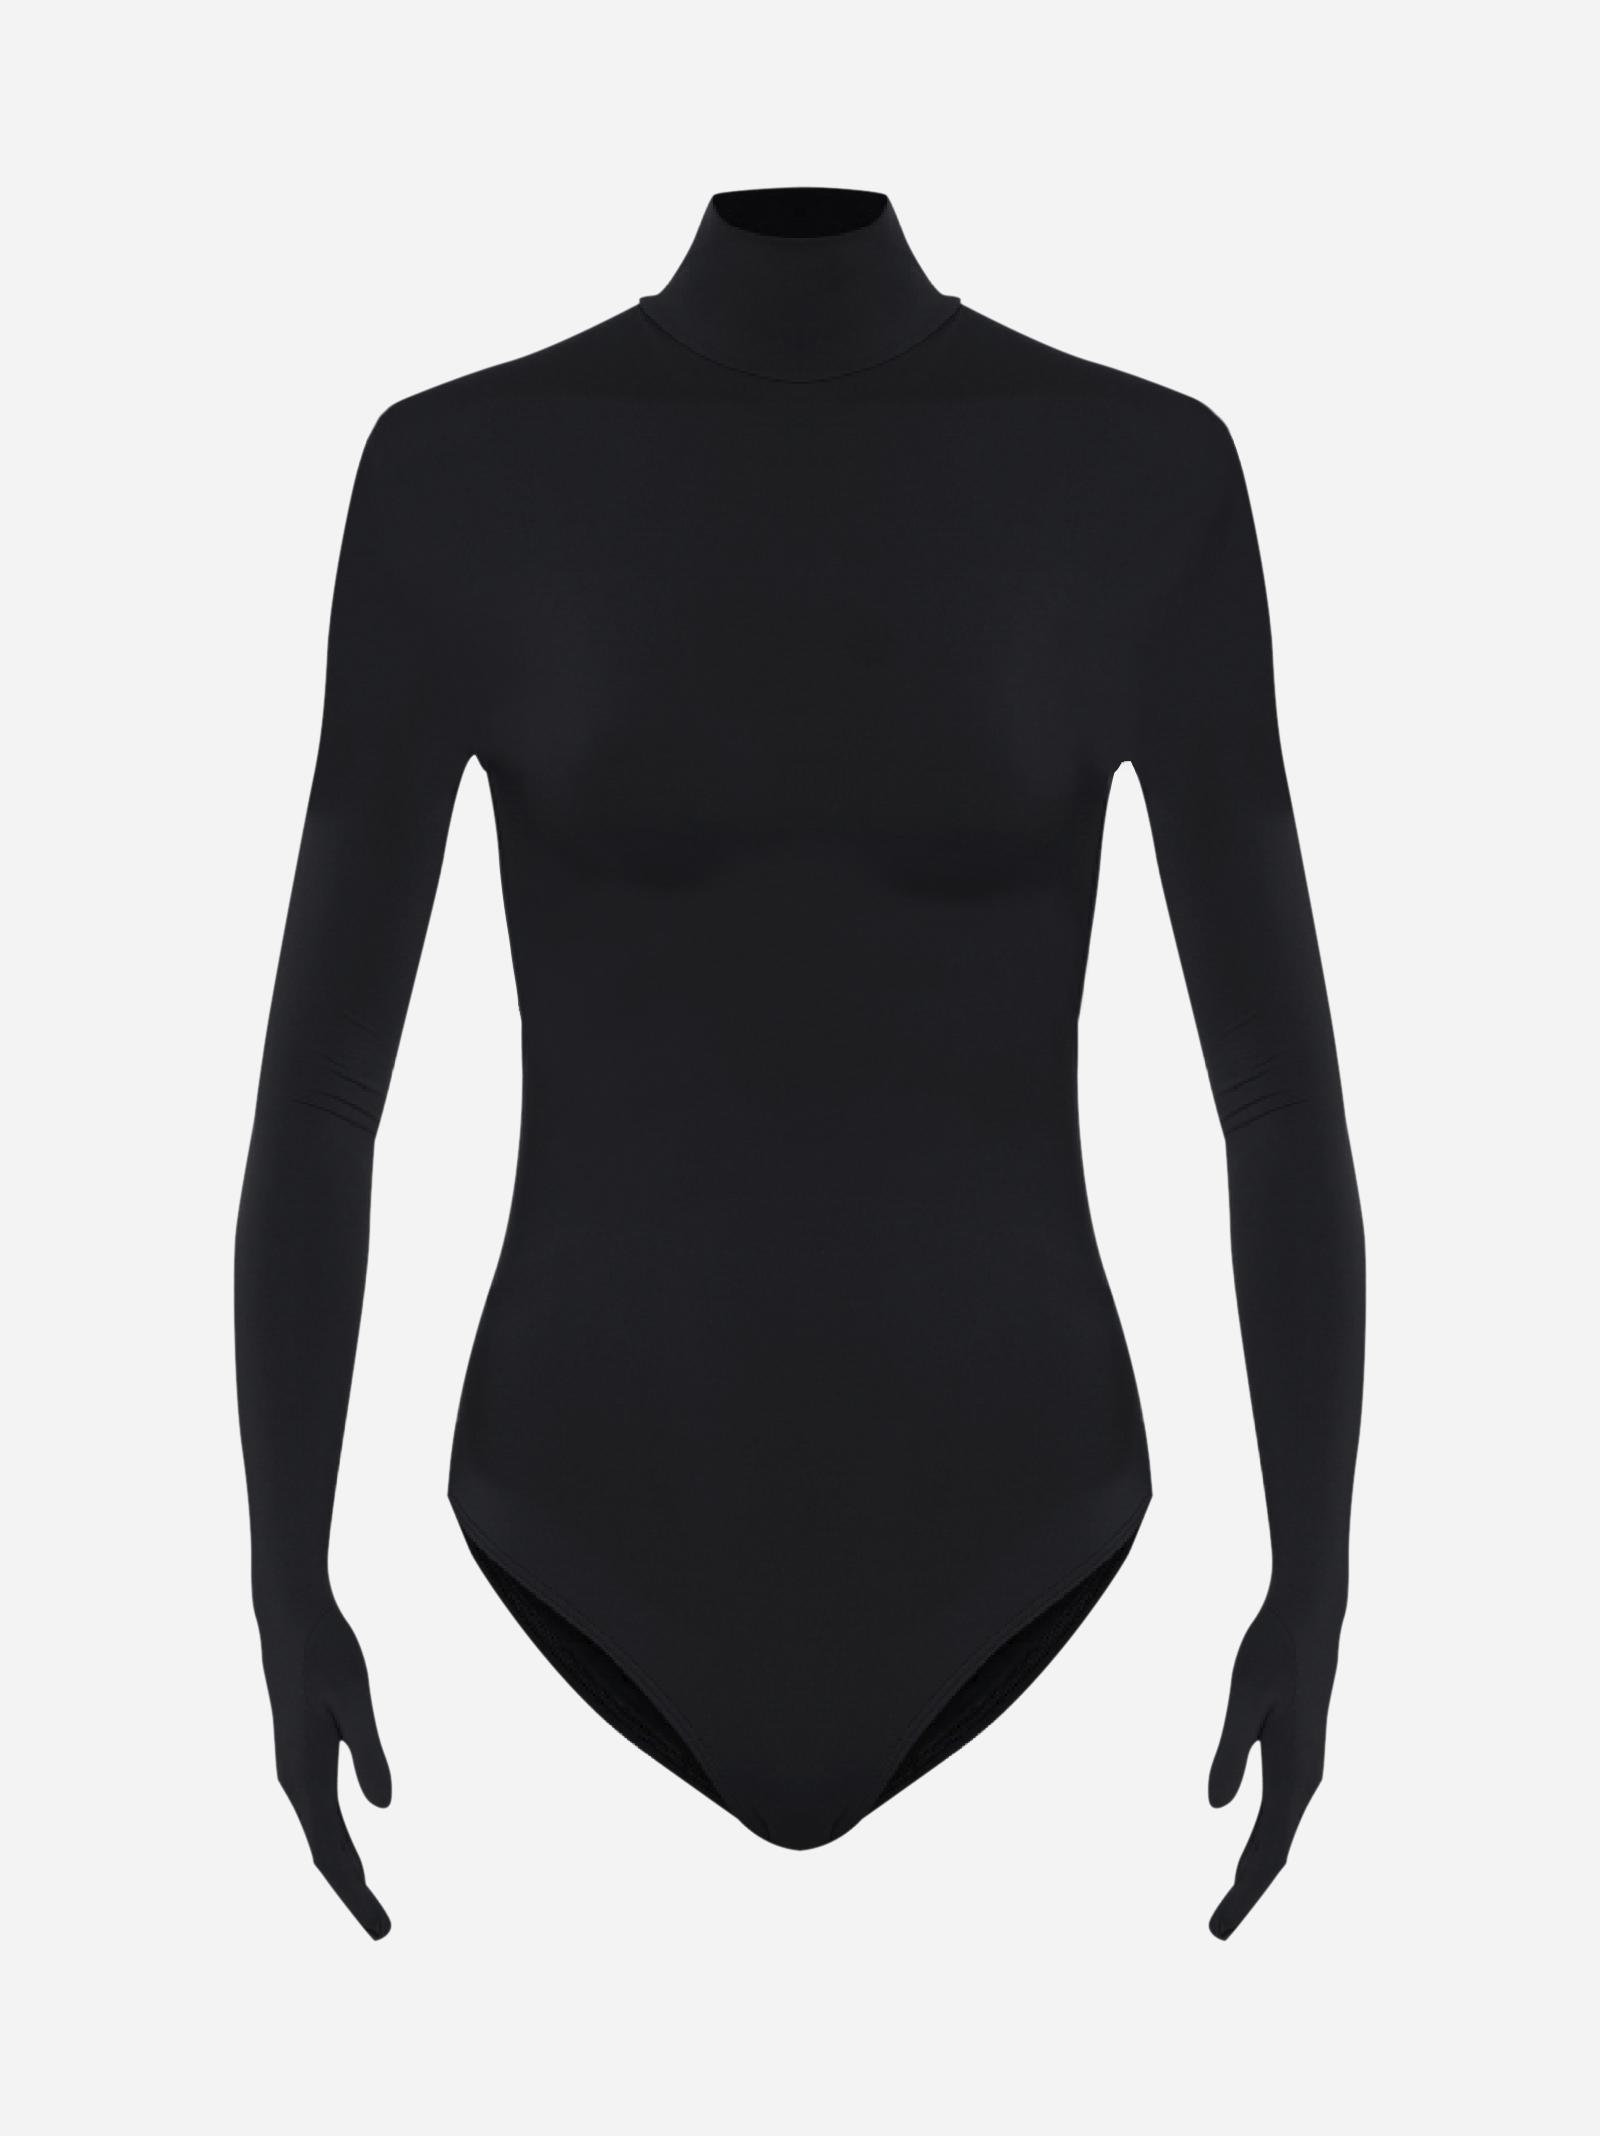 Vetements Built-in Gloves Bodysuit in Black